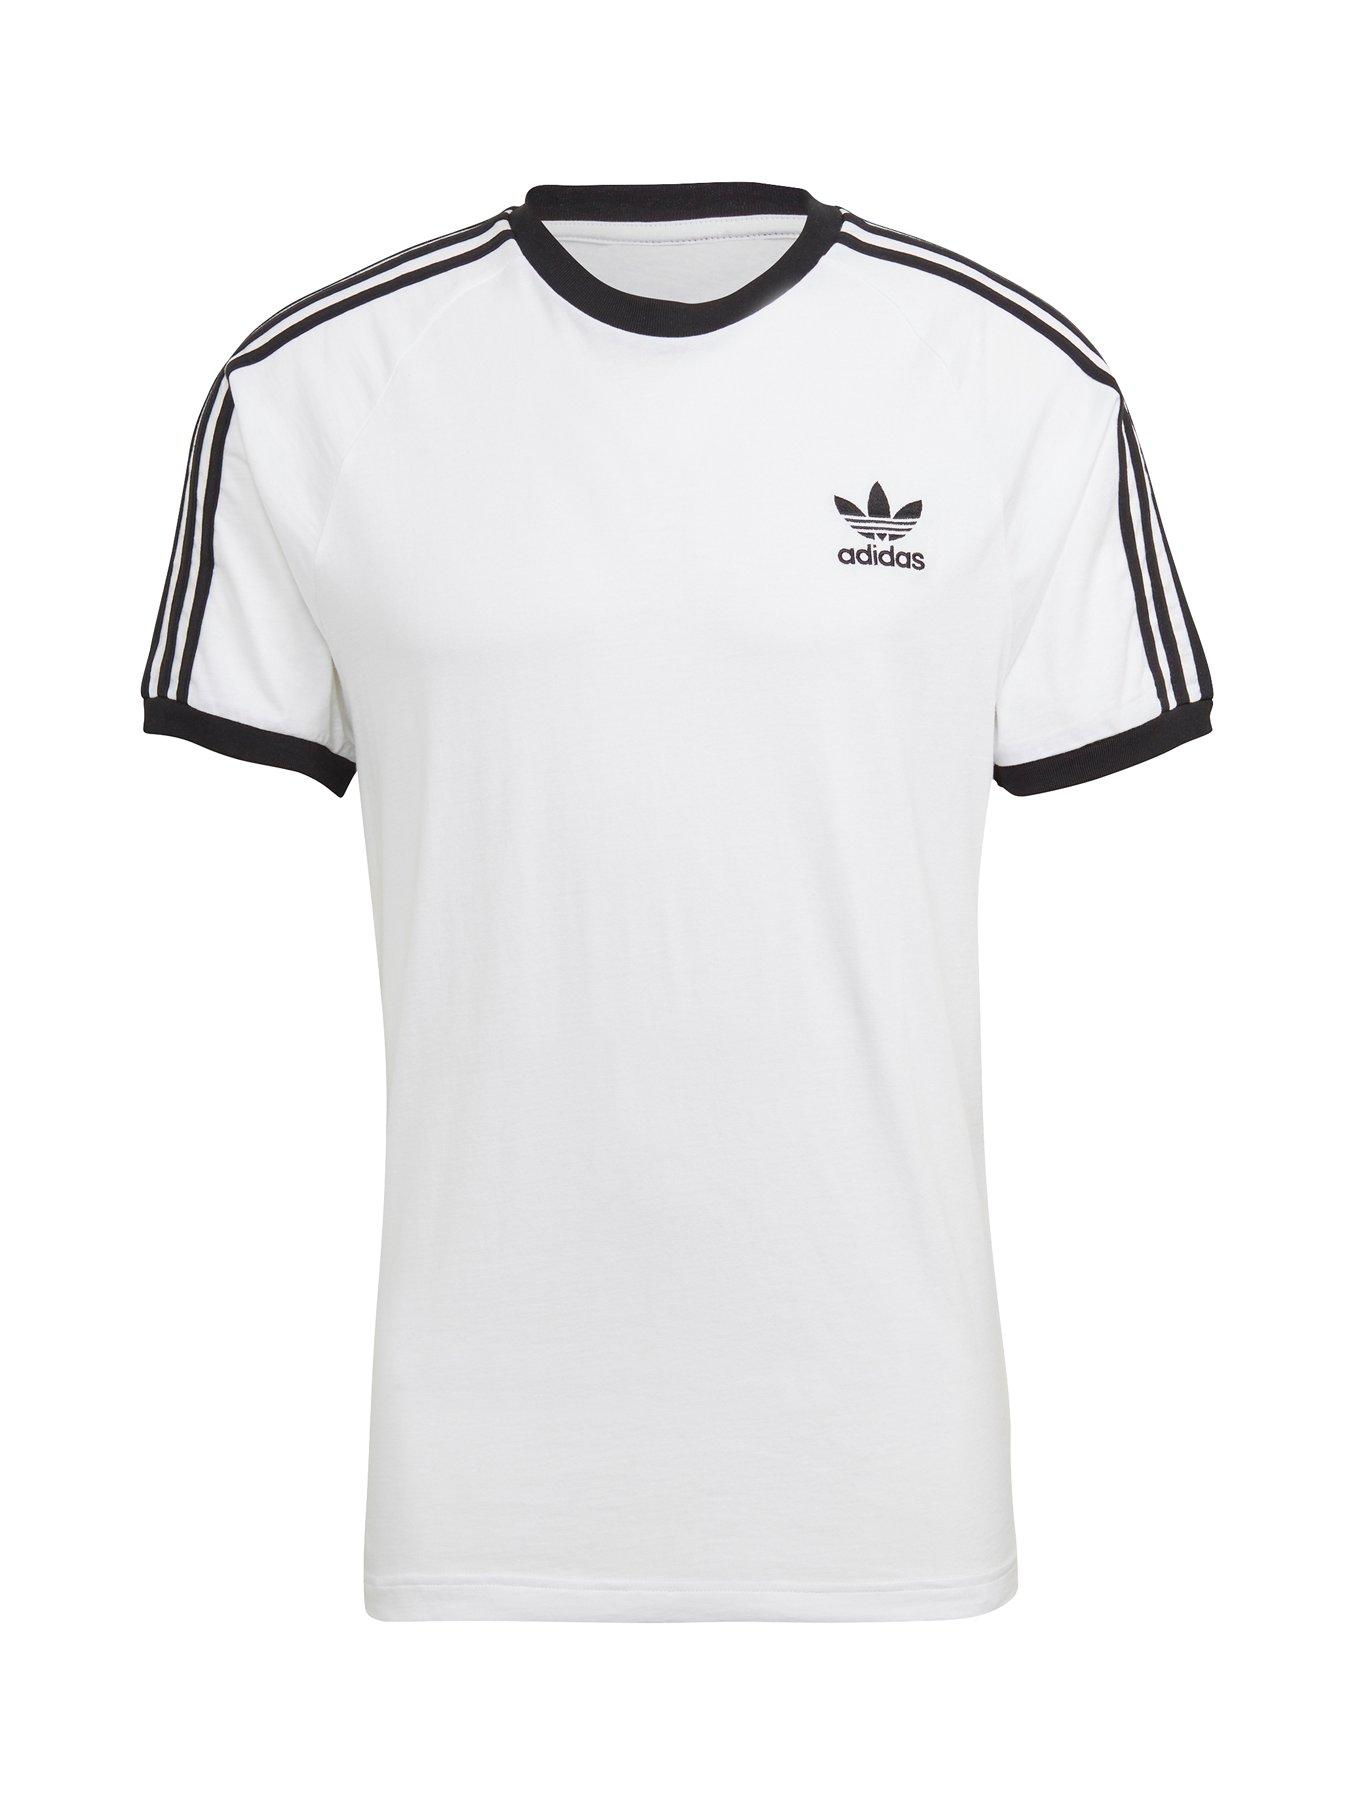 3XL | Adidas | T-shirts & polos | Sportswear | Men